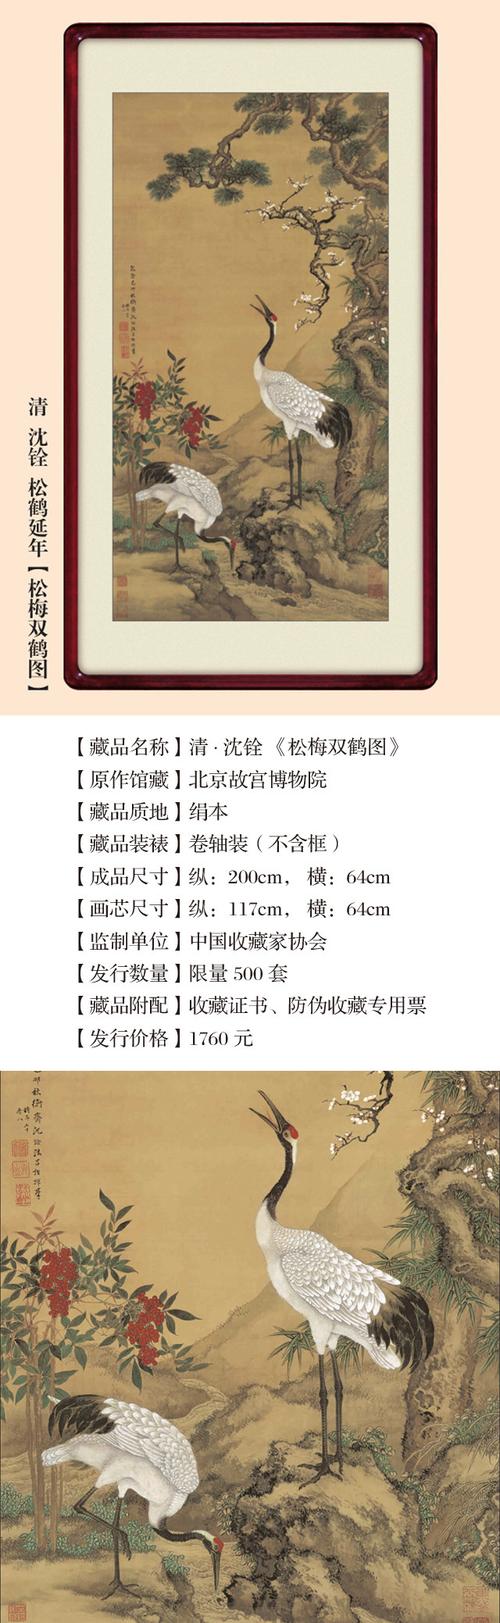 中国的名画 中国的名画作品介绍